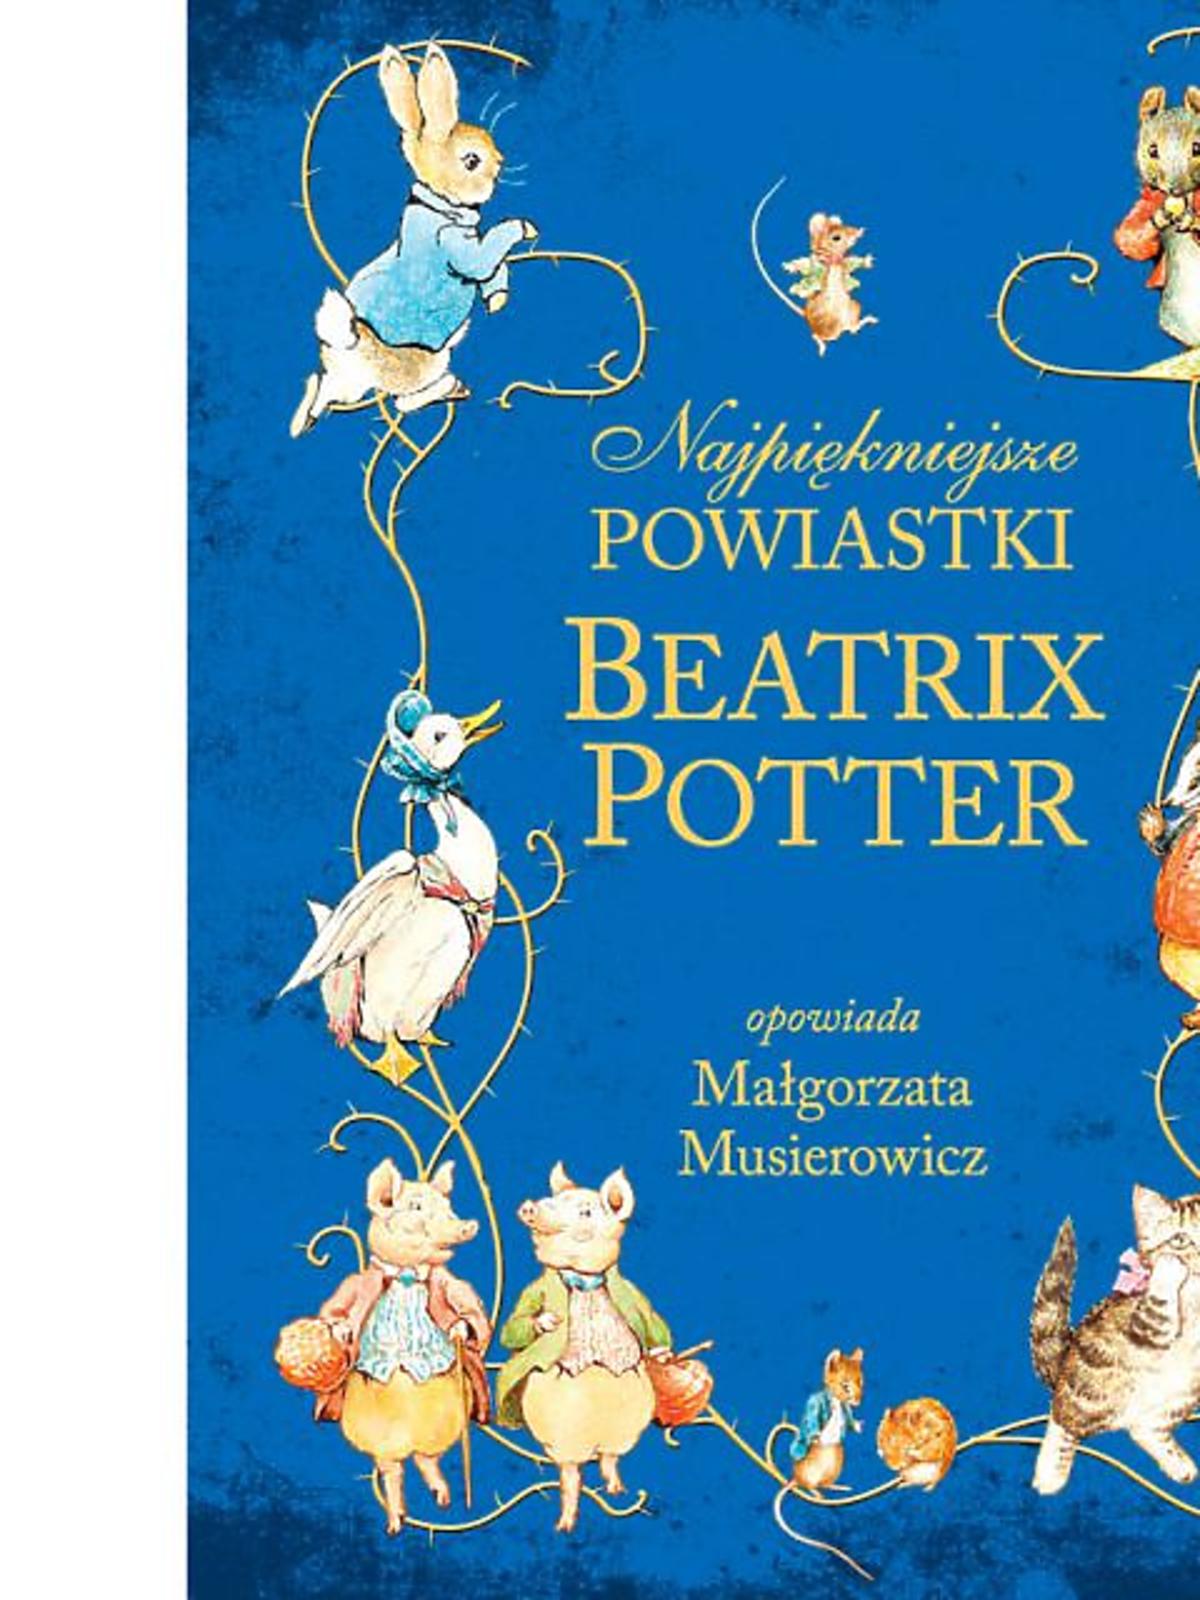 Beatrix-Potter-2.jpg